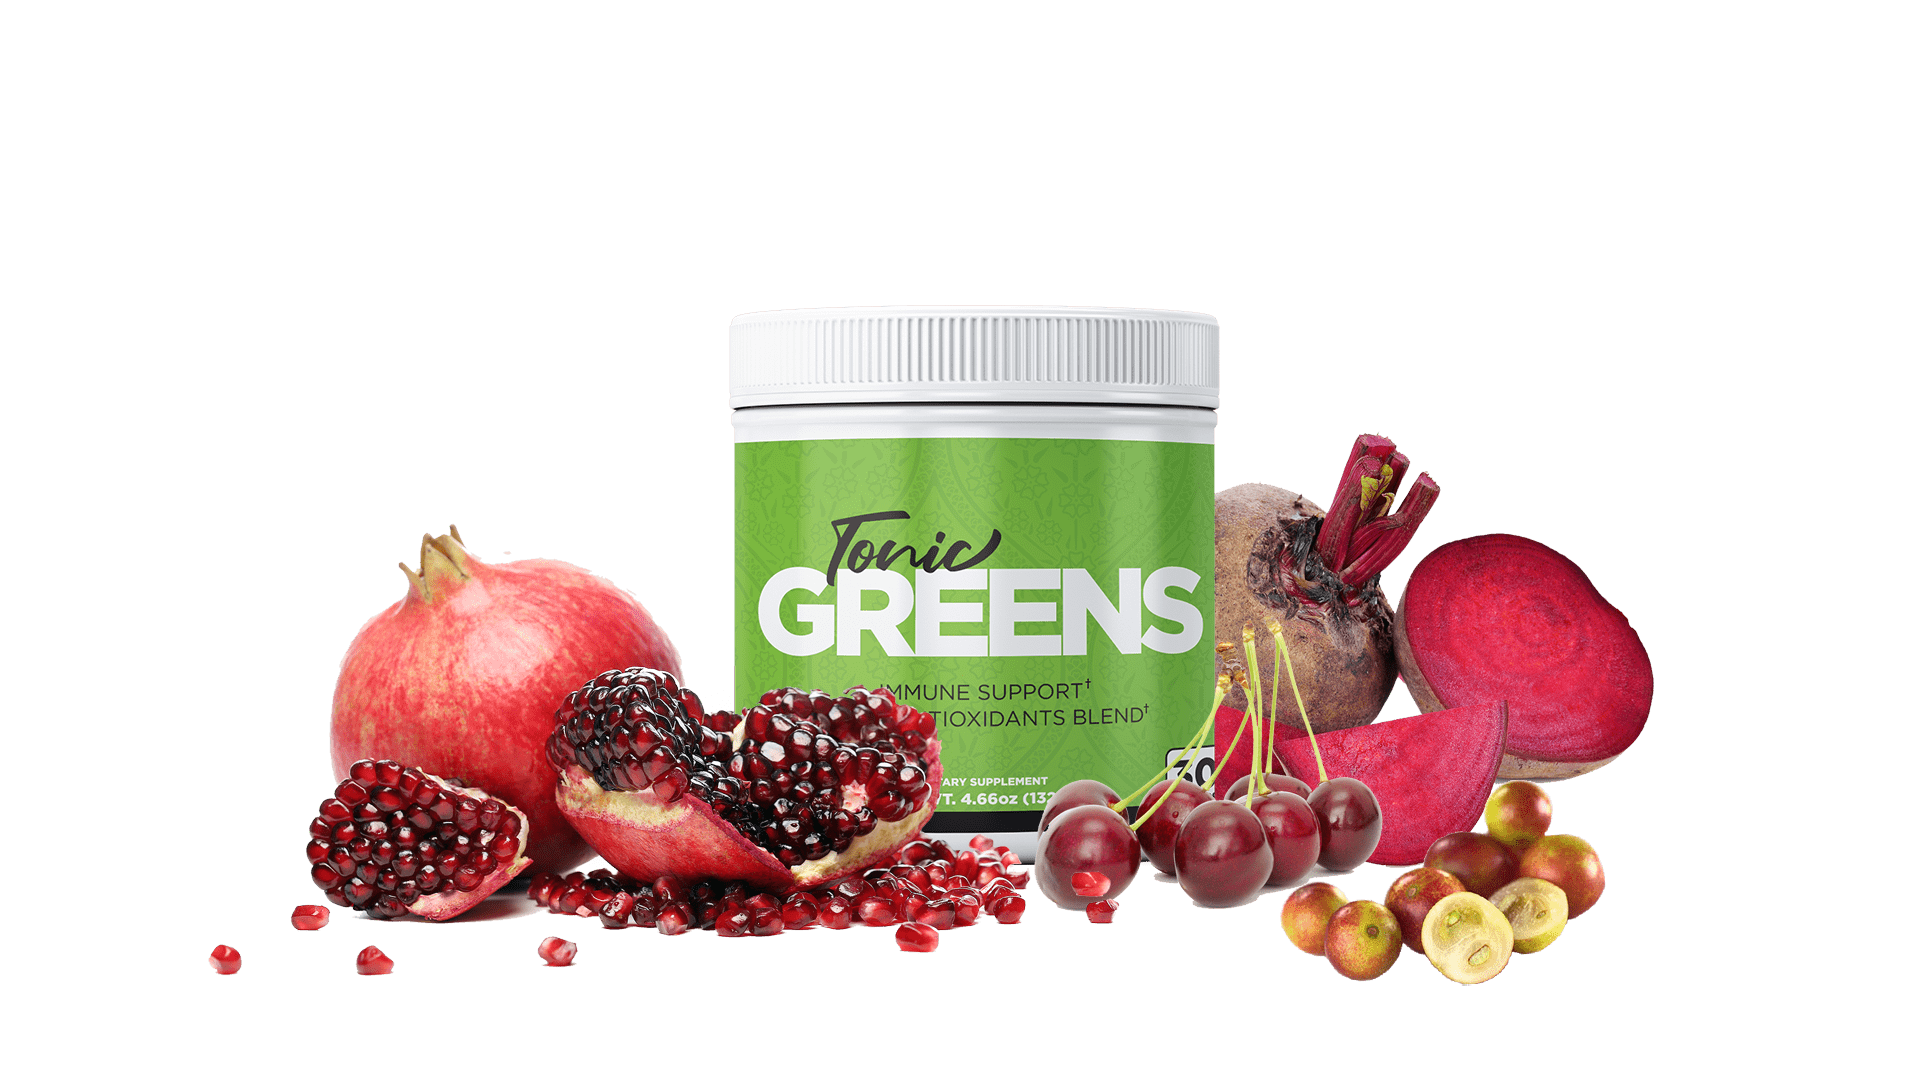 tonic greens ingredients